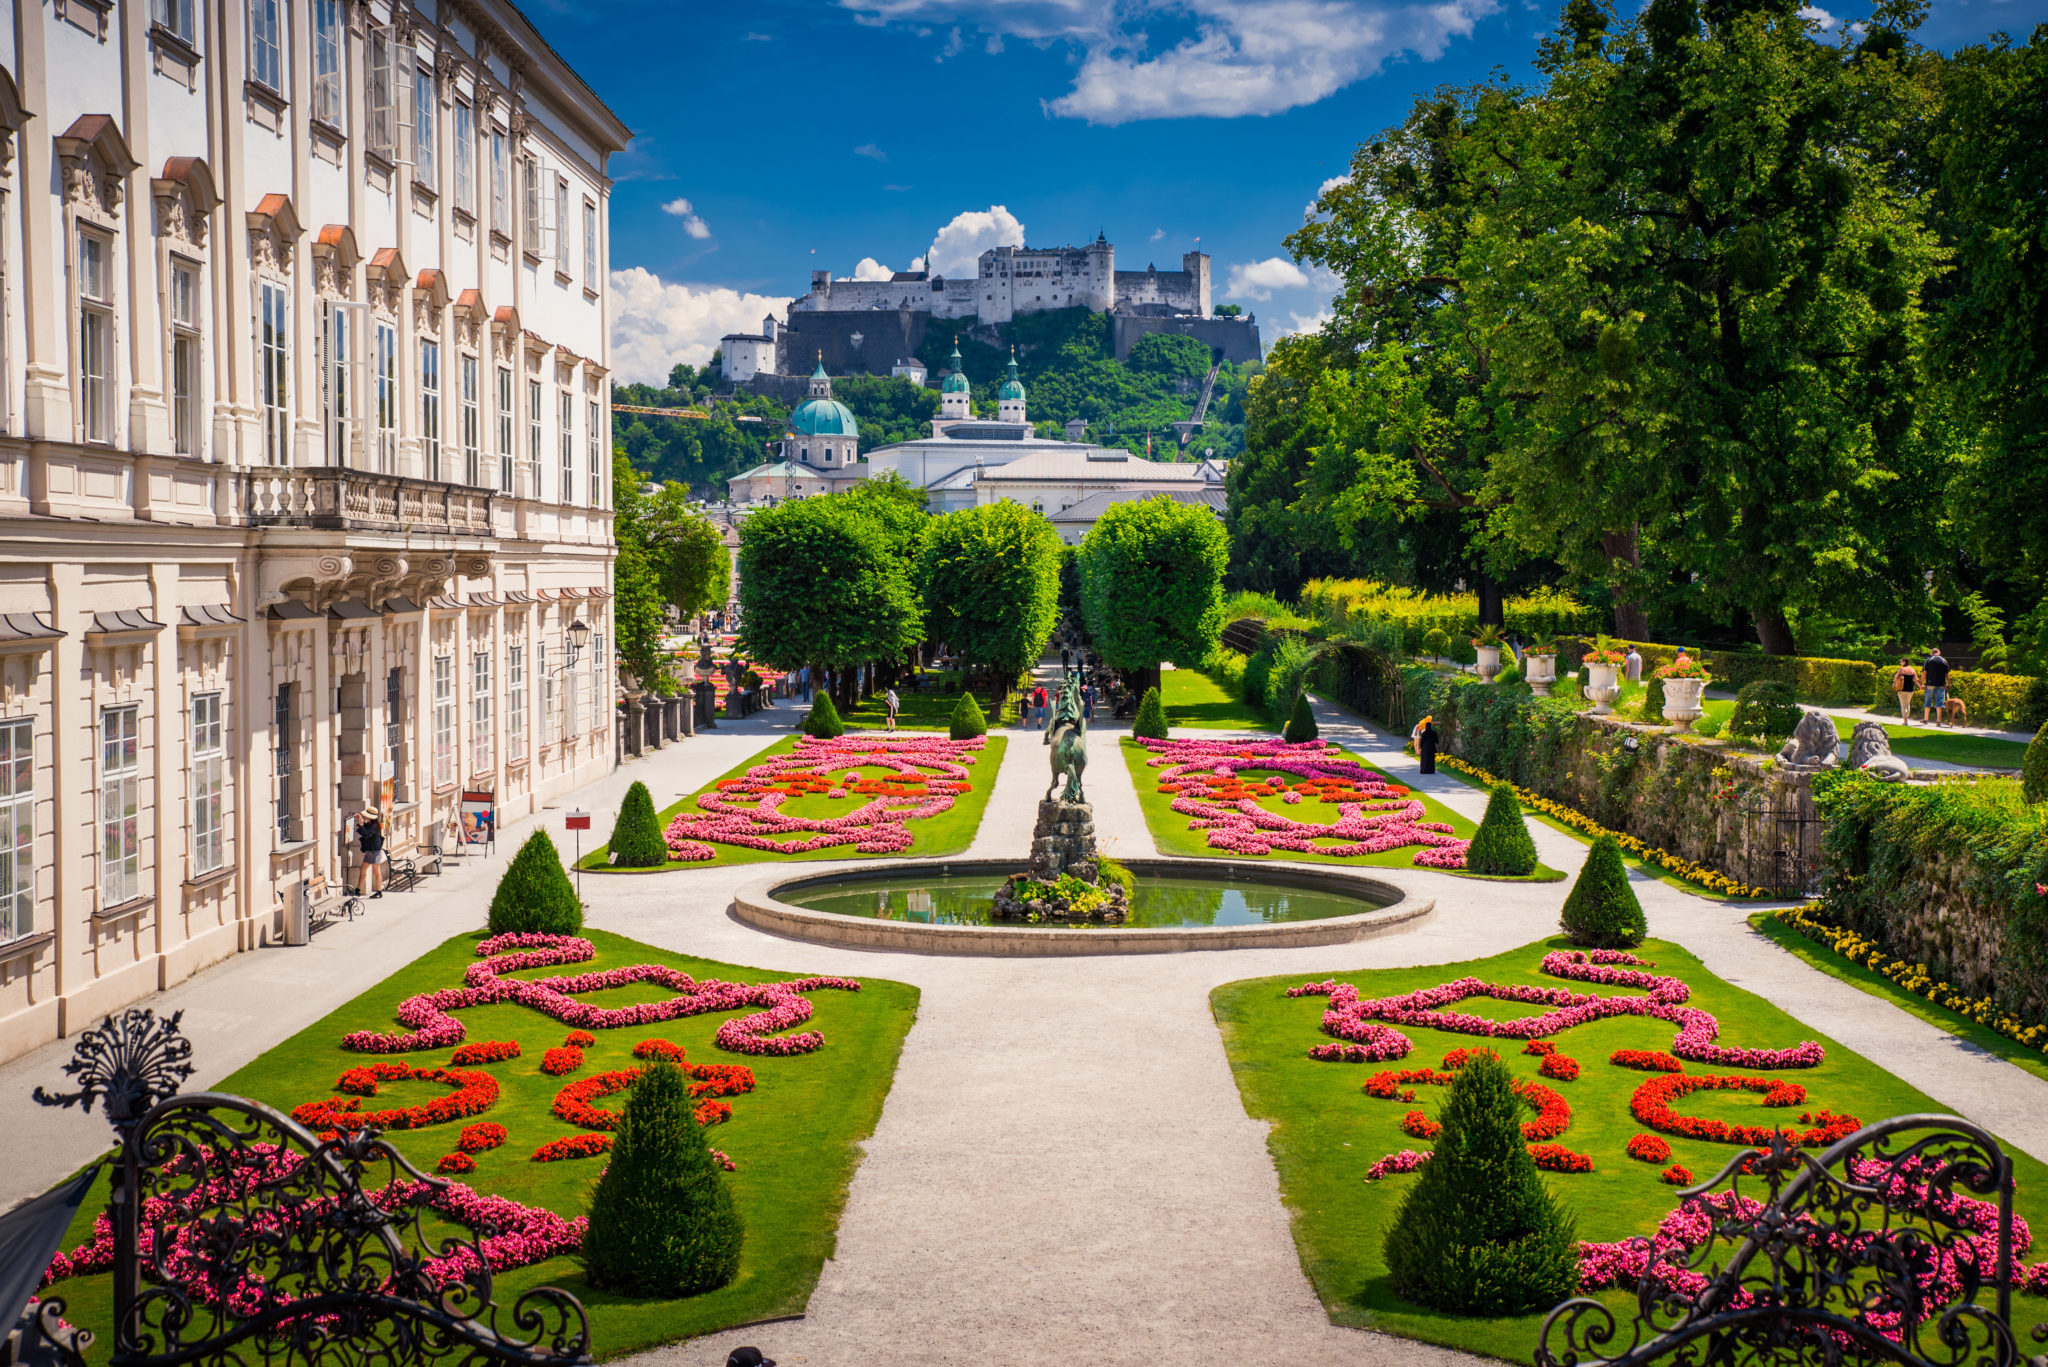 Summer Salzburg castle in background